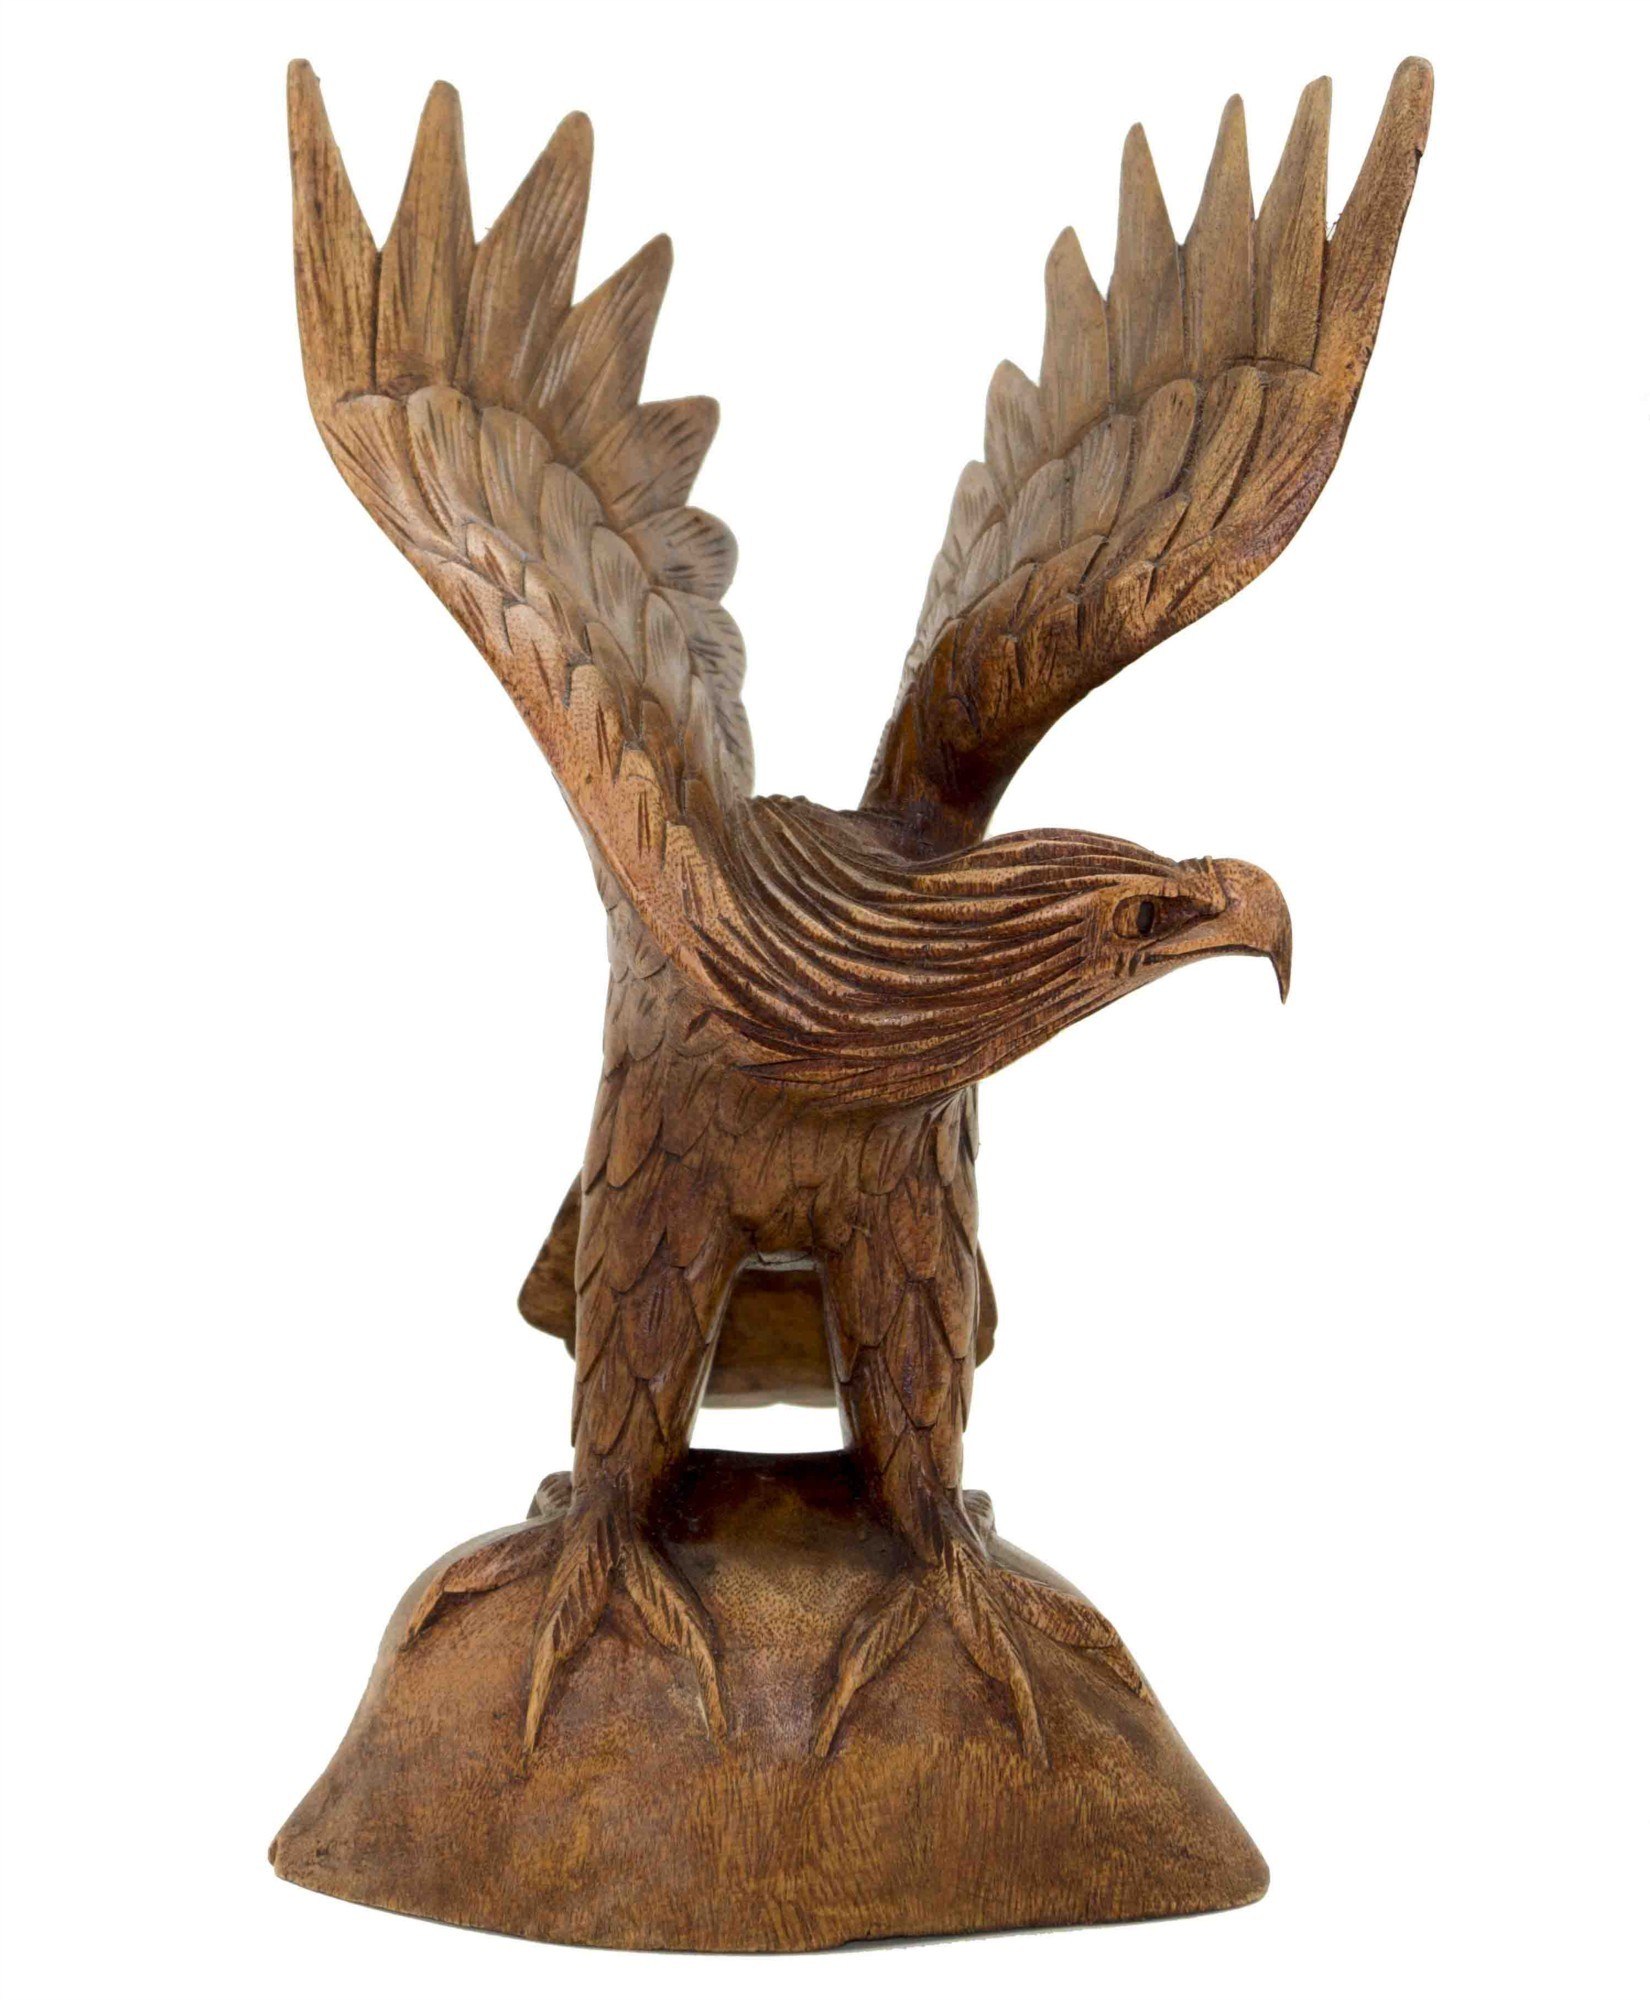 Купить в орле с доставкой. Статуэтка резная «орёл с птенцом». Скульптурная резьба по дереву Орел. Деревянная фигурка орла. Фигурки Орлов из дерева.